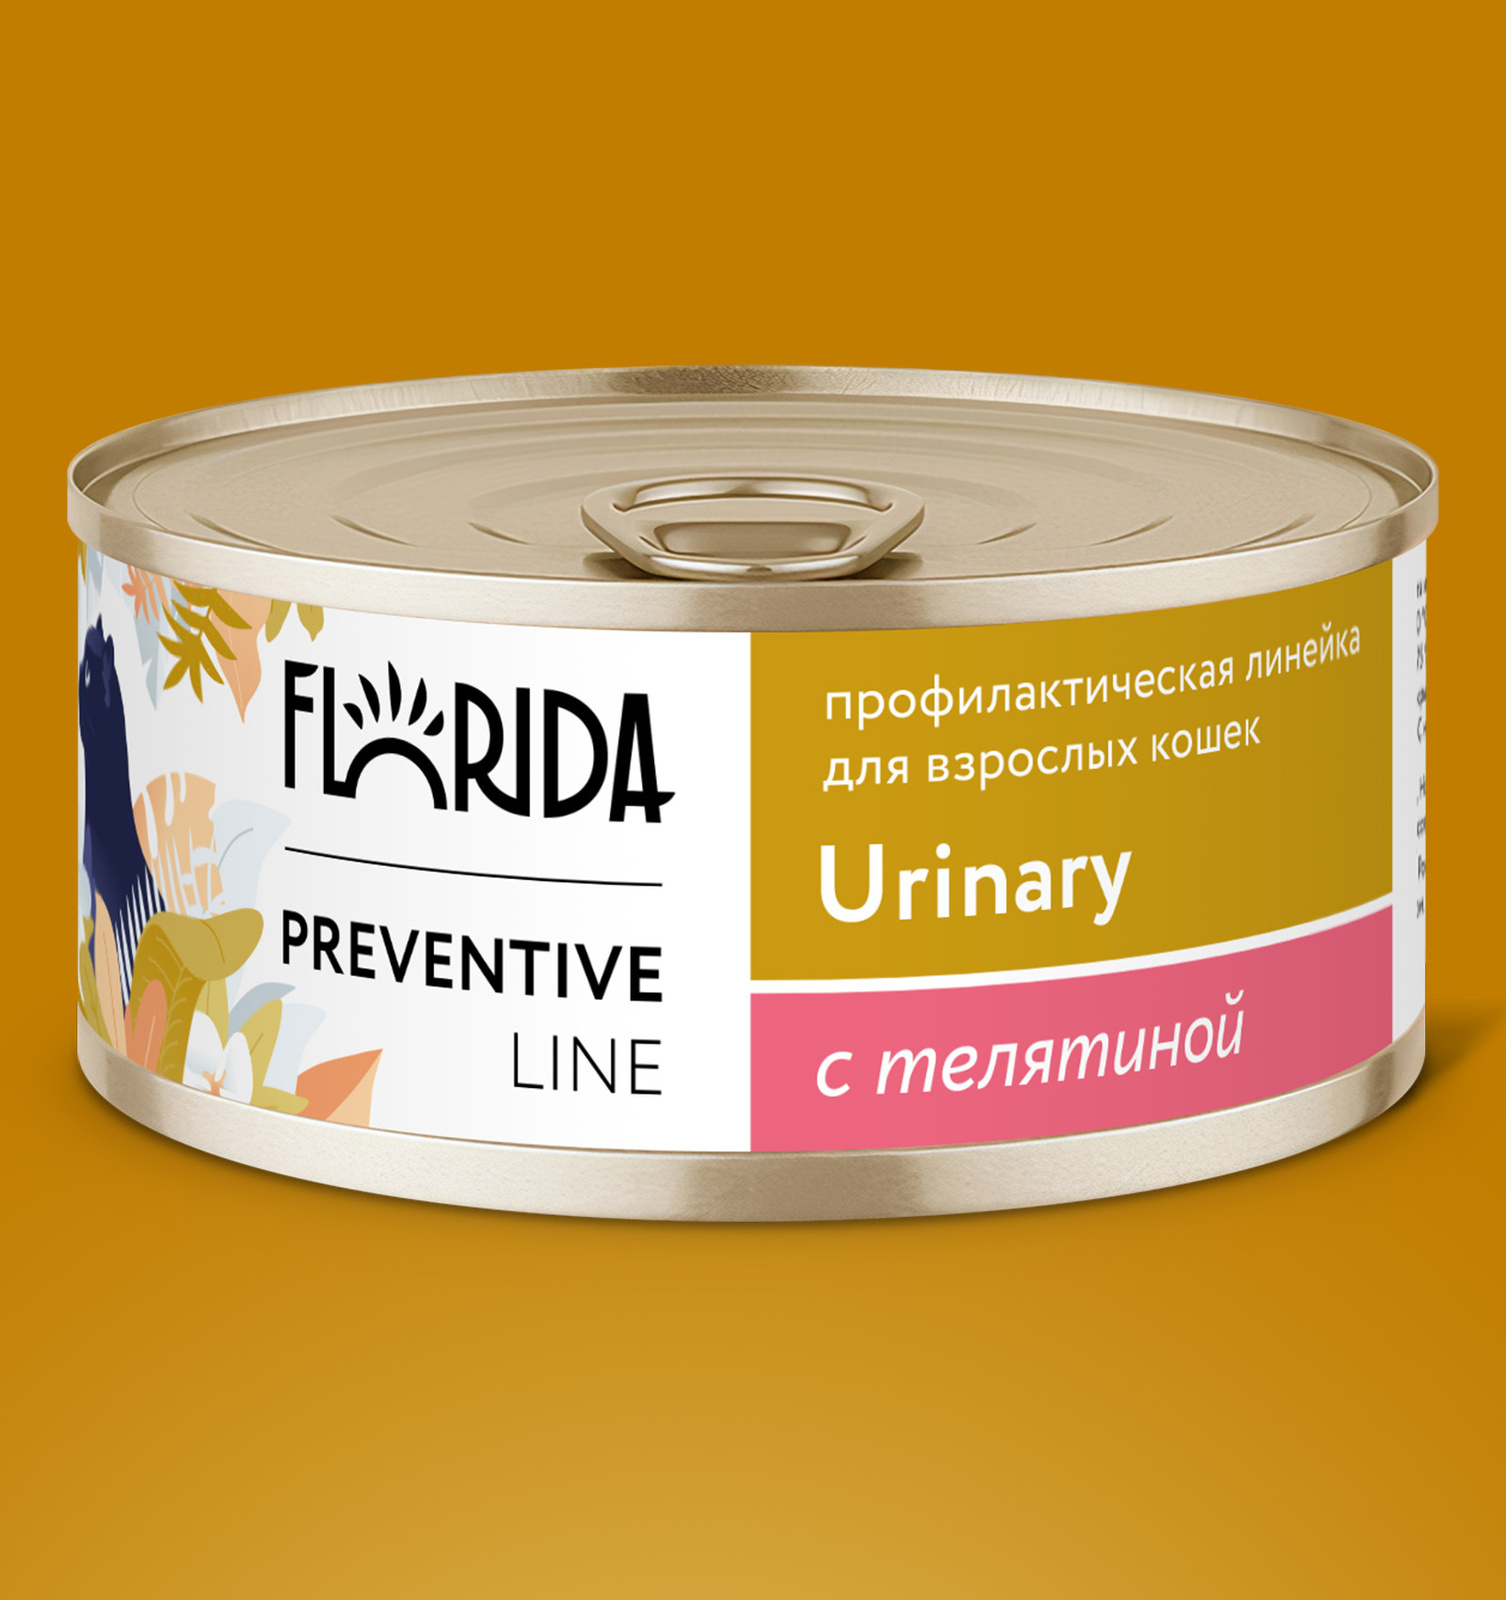 Florida Preventive Line консервы urinary для кошек Профилактика образования мочевых камней